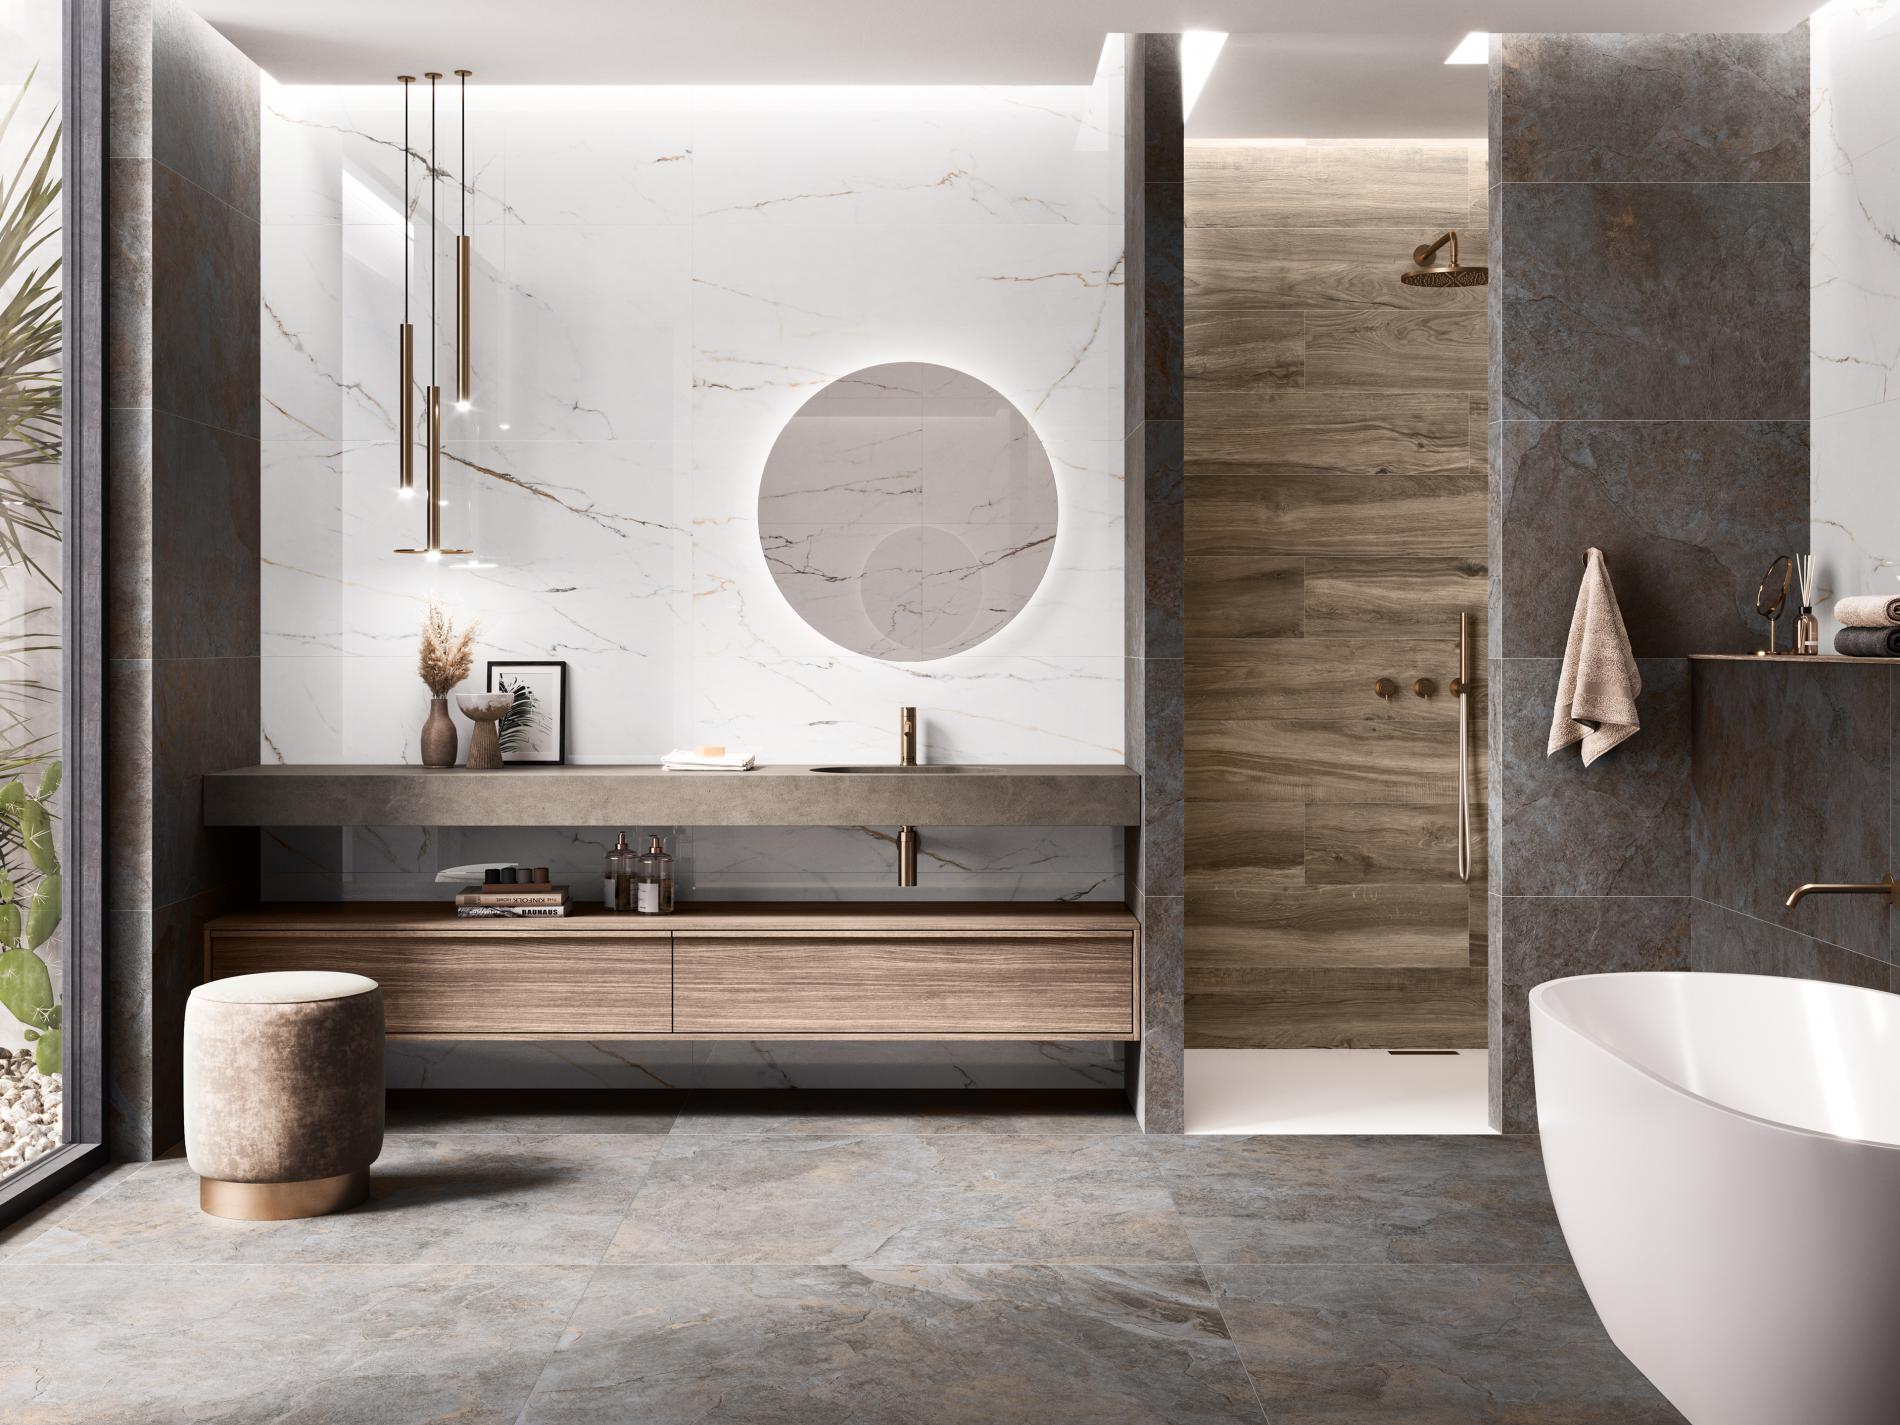 Łazienka wyłożona płytkami imitującymi kamień, marmur i drewno z białą wanną i kabiną prysznicową, wiszącą szafką i półką z umywalką, okrągłym lustrem i lampą wiszącą